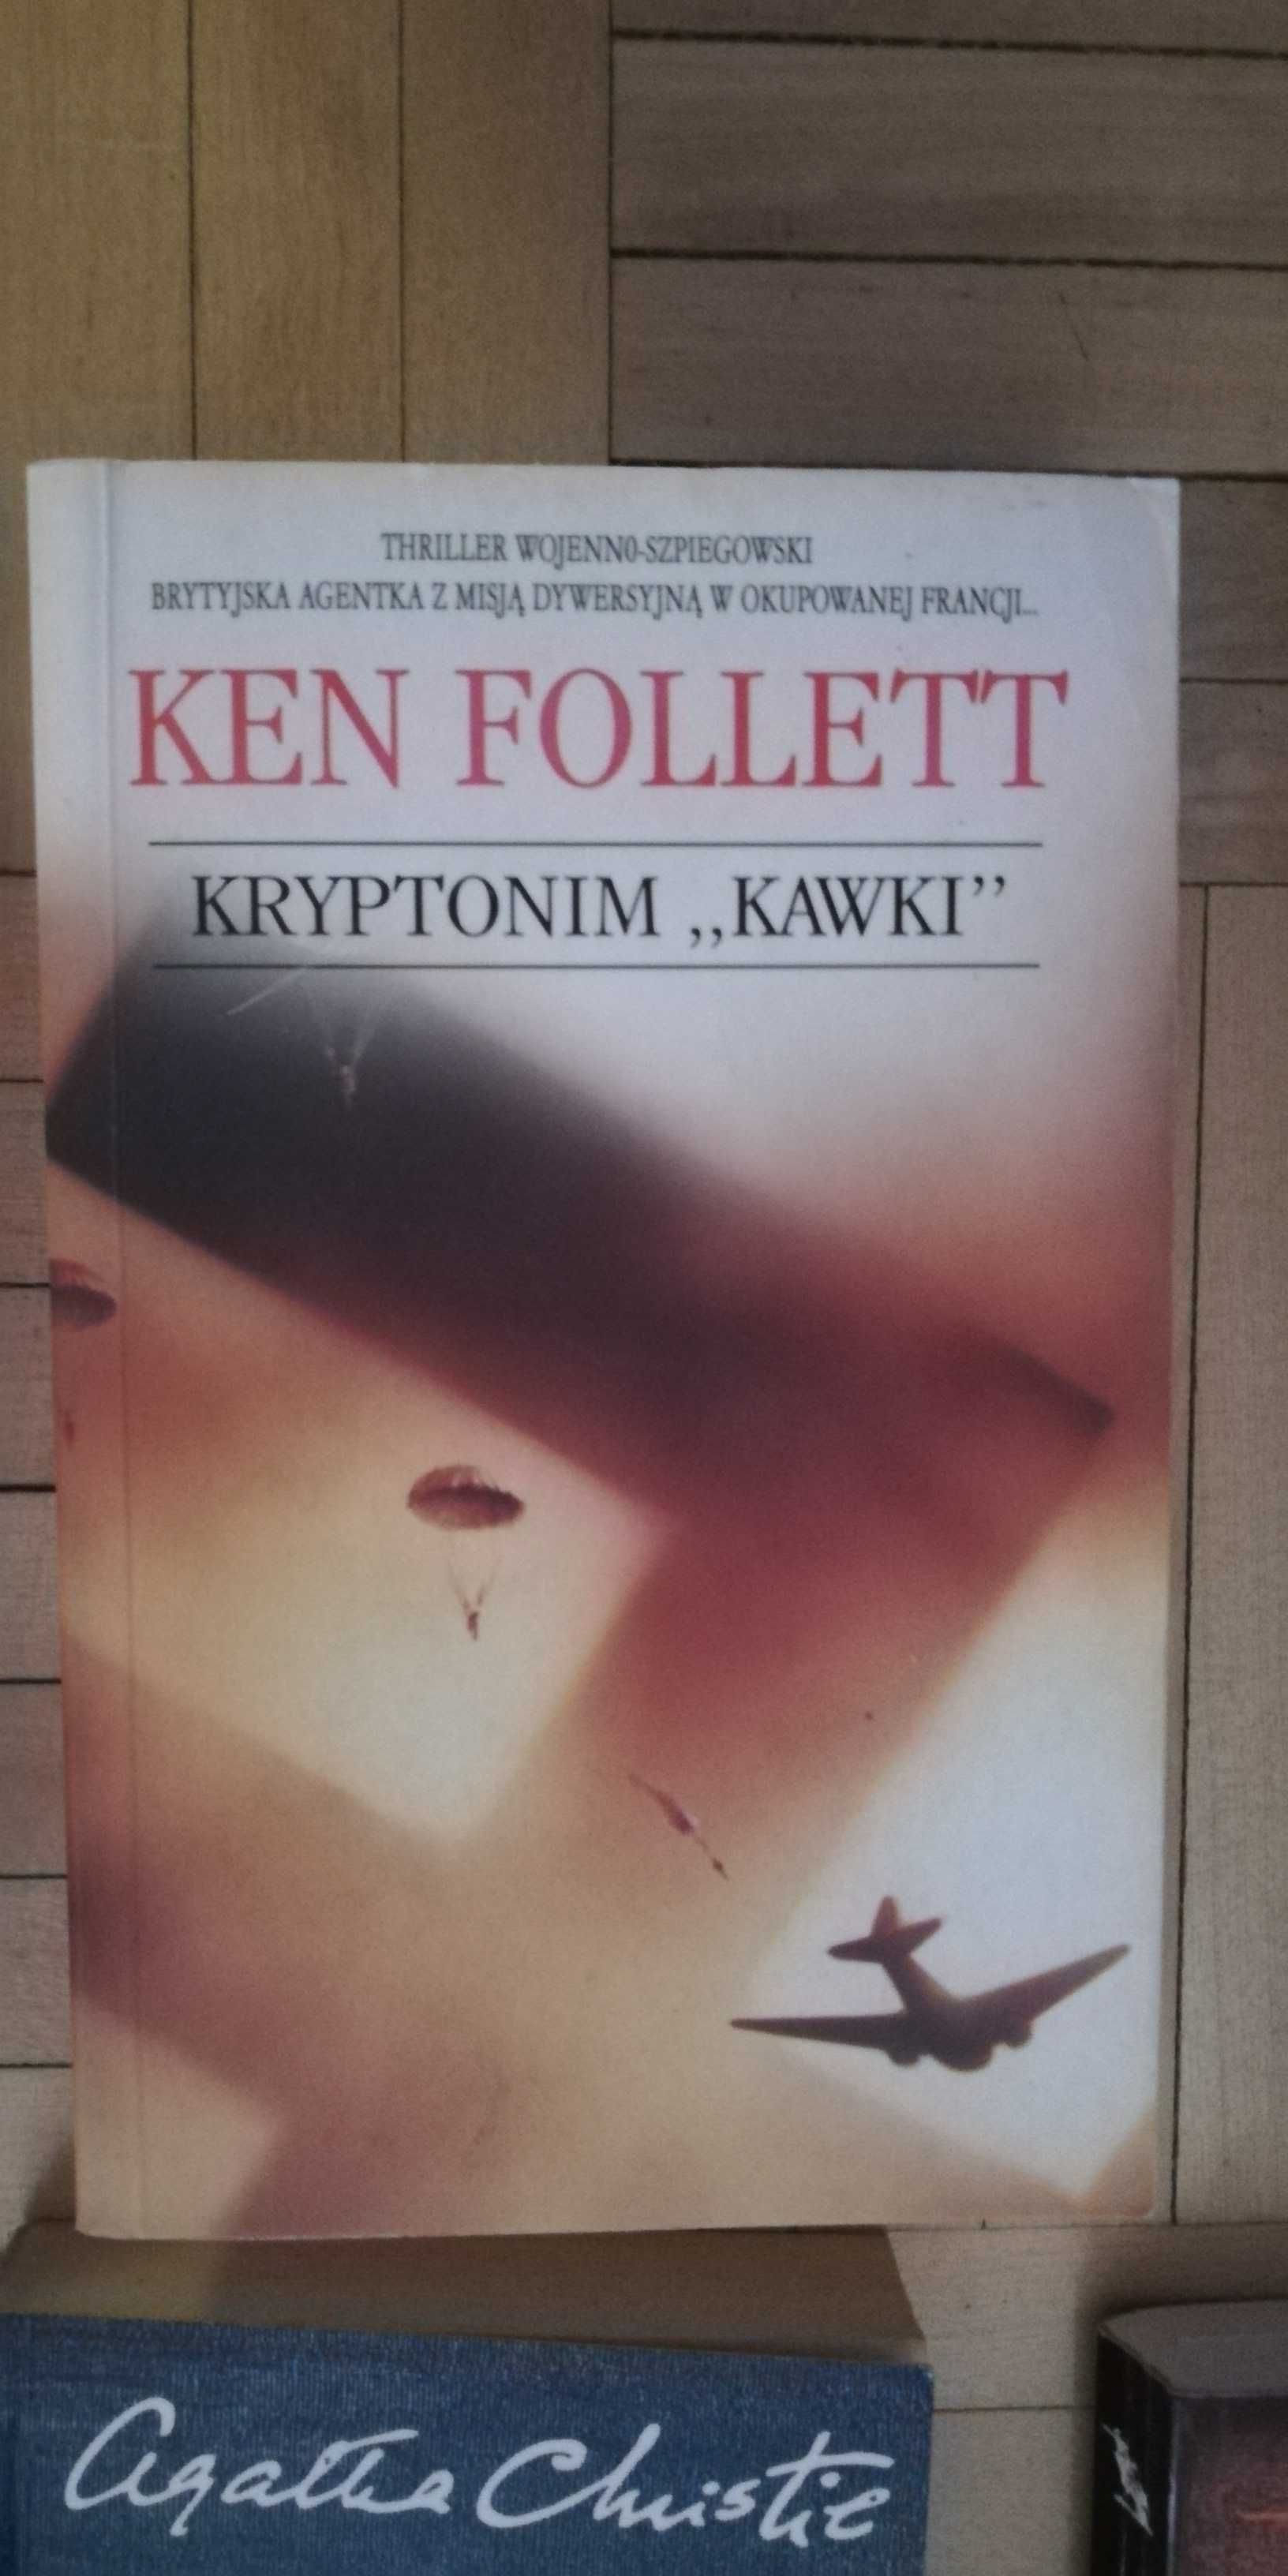 Ken Follett. Kryptonim "Kawki"